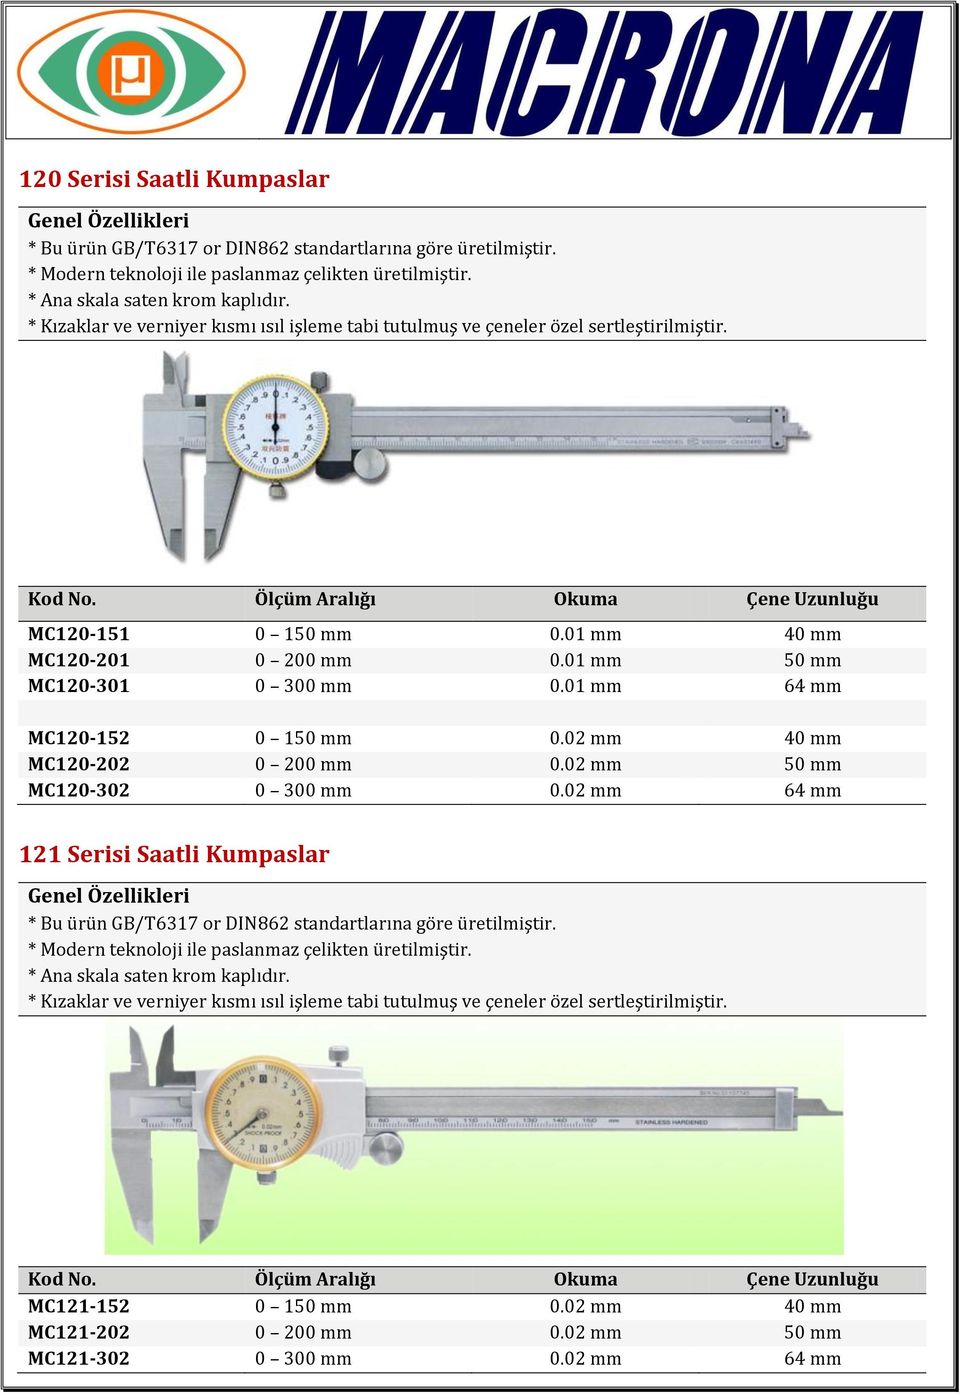 01 mm 50 mm MC120-301 0 300 mm 0.01 mm 64 mm MC120-152 0 150 mm 0.02 mm 40 mm MC120-202 0 200 mm 0.02 mm 50 mm MC120-302 0 300 mm 0.